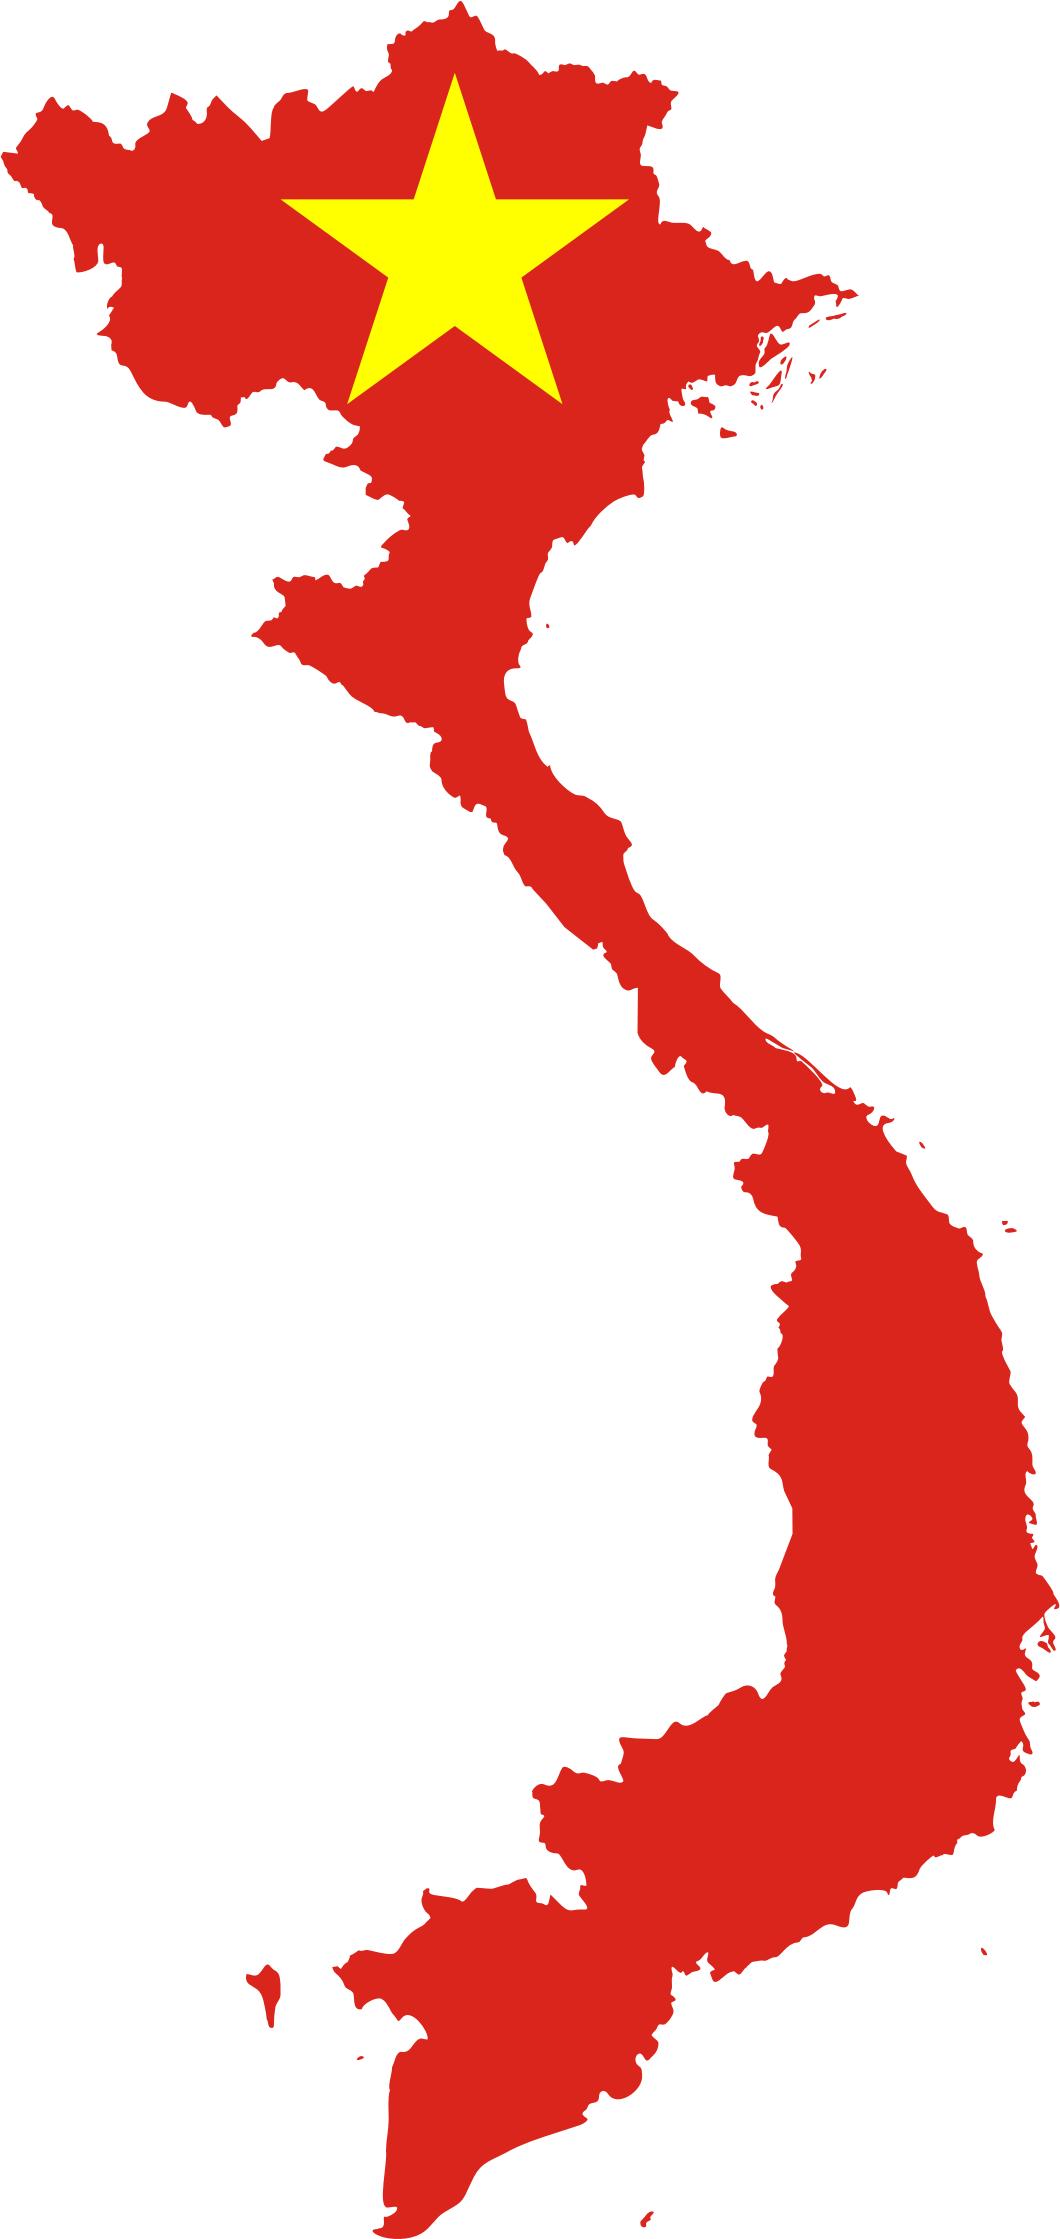 Hình ảnh cờ đỏ sao vàng Việt Nam đẹp nhất